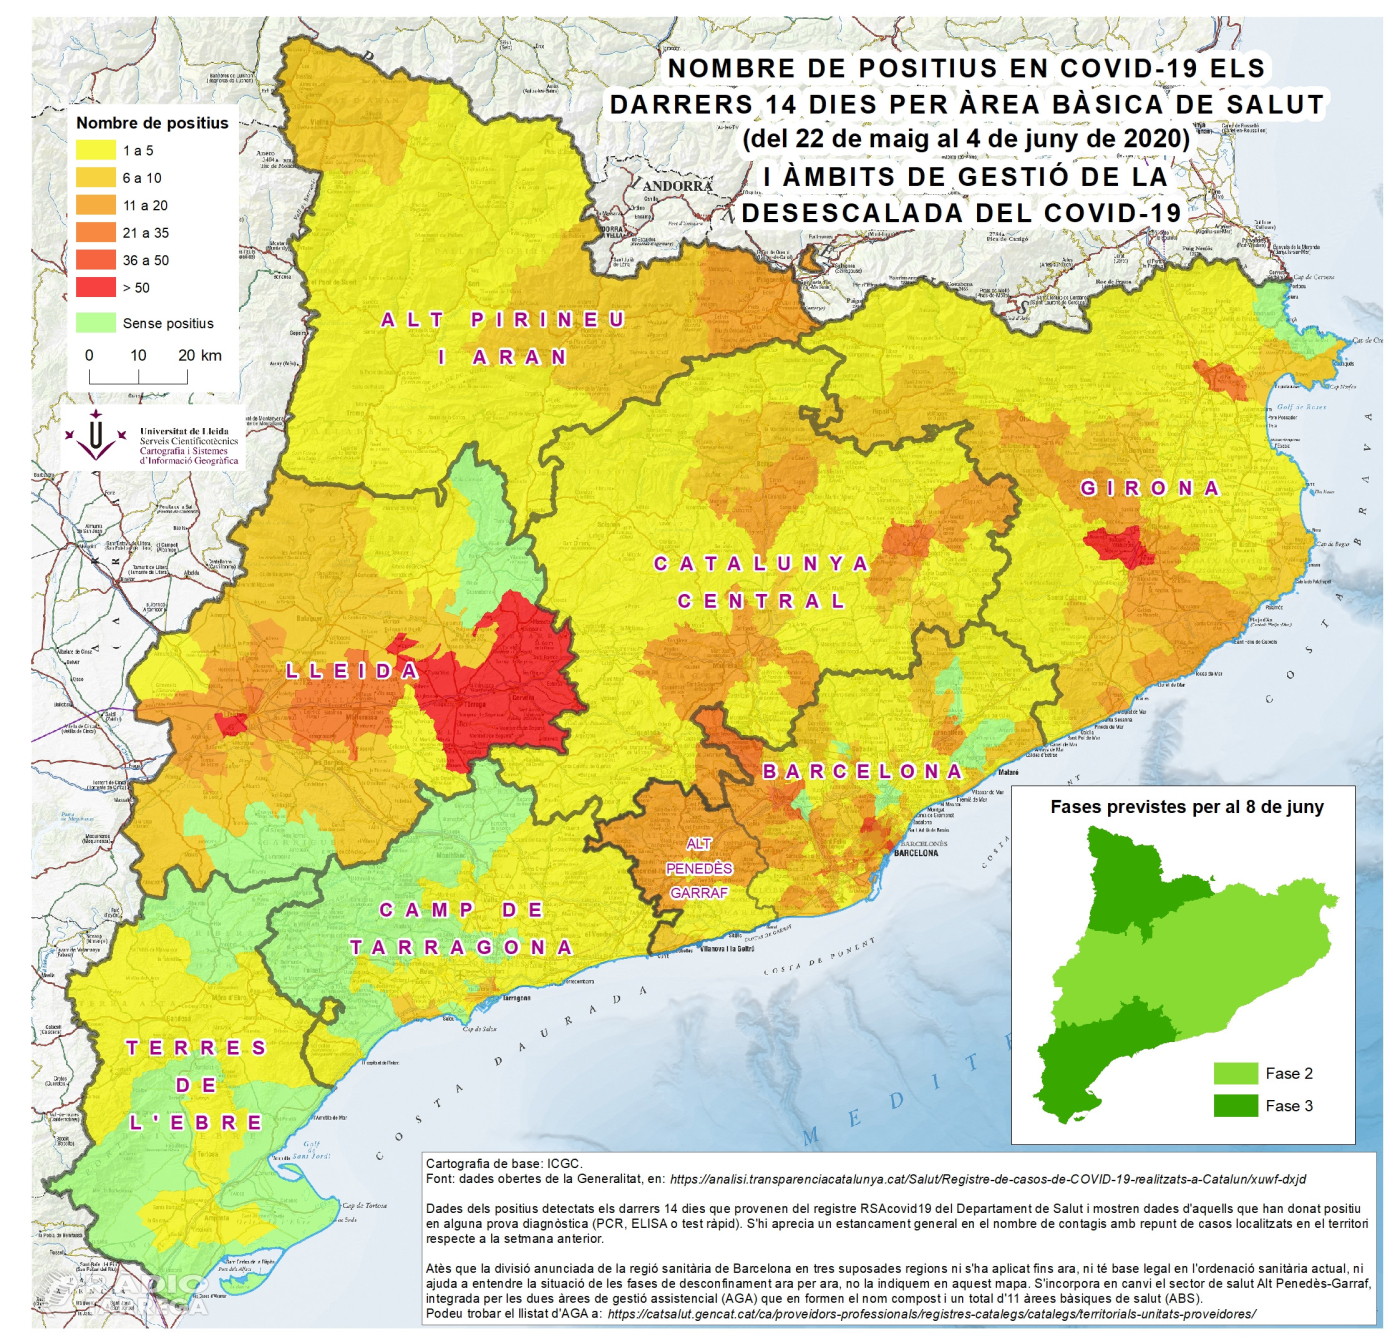 El darrer mapa del Servei Cientificotècnic de Cartografia i SIG de la Universitat de Lleida mostra que la COVID19 es resisteix a marxar